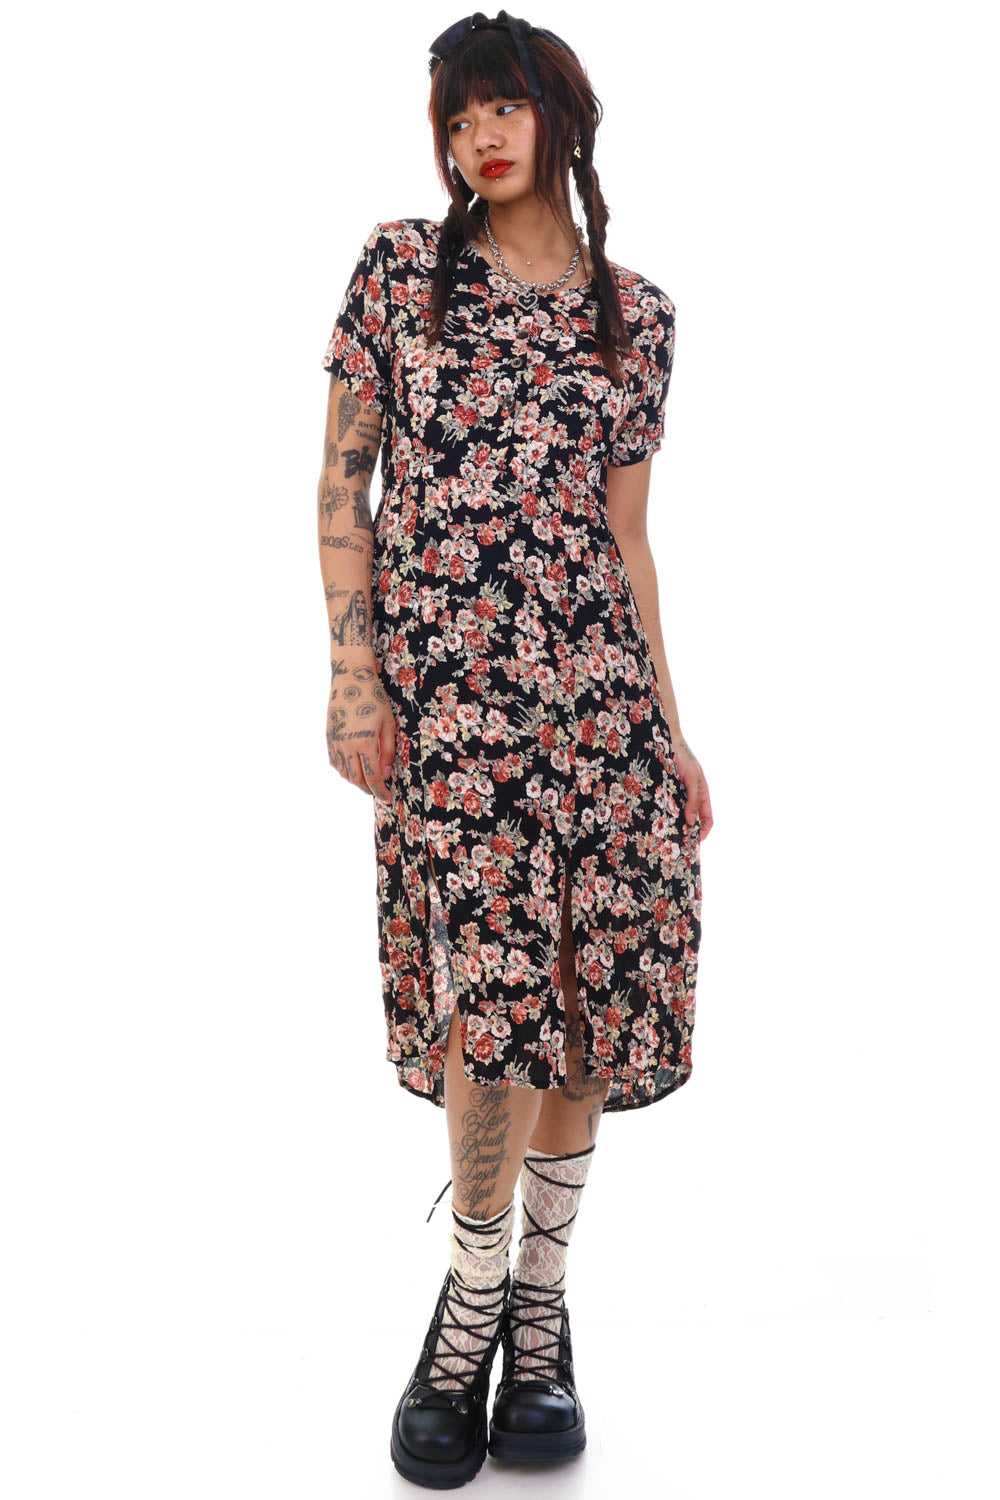 Vintage Y2K Grunge Floral Slit Dress - S/M - image 2